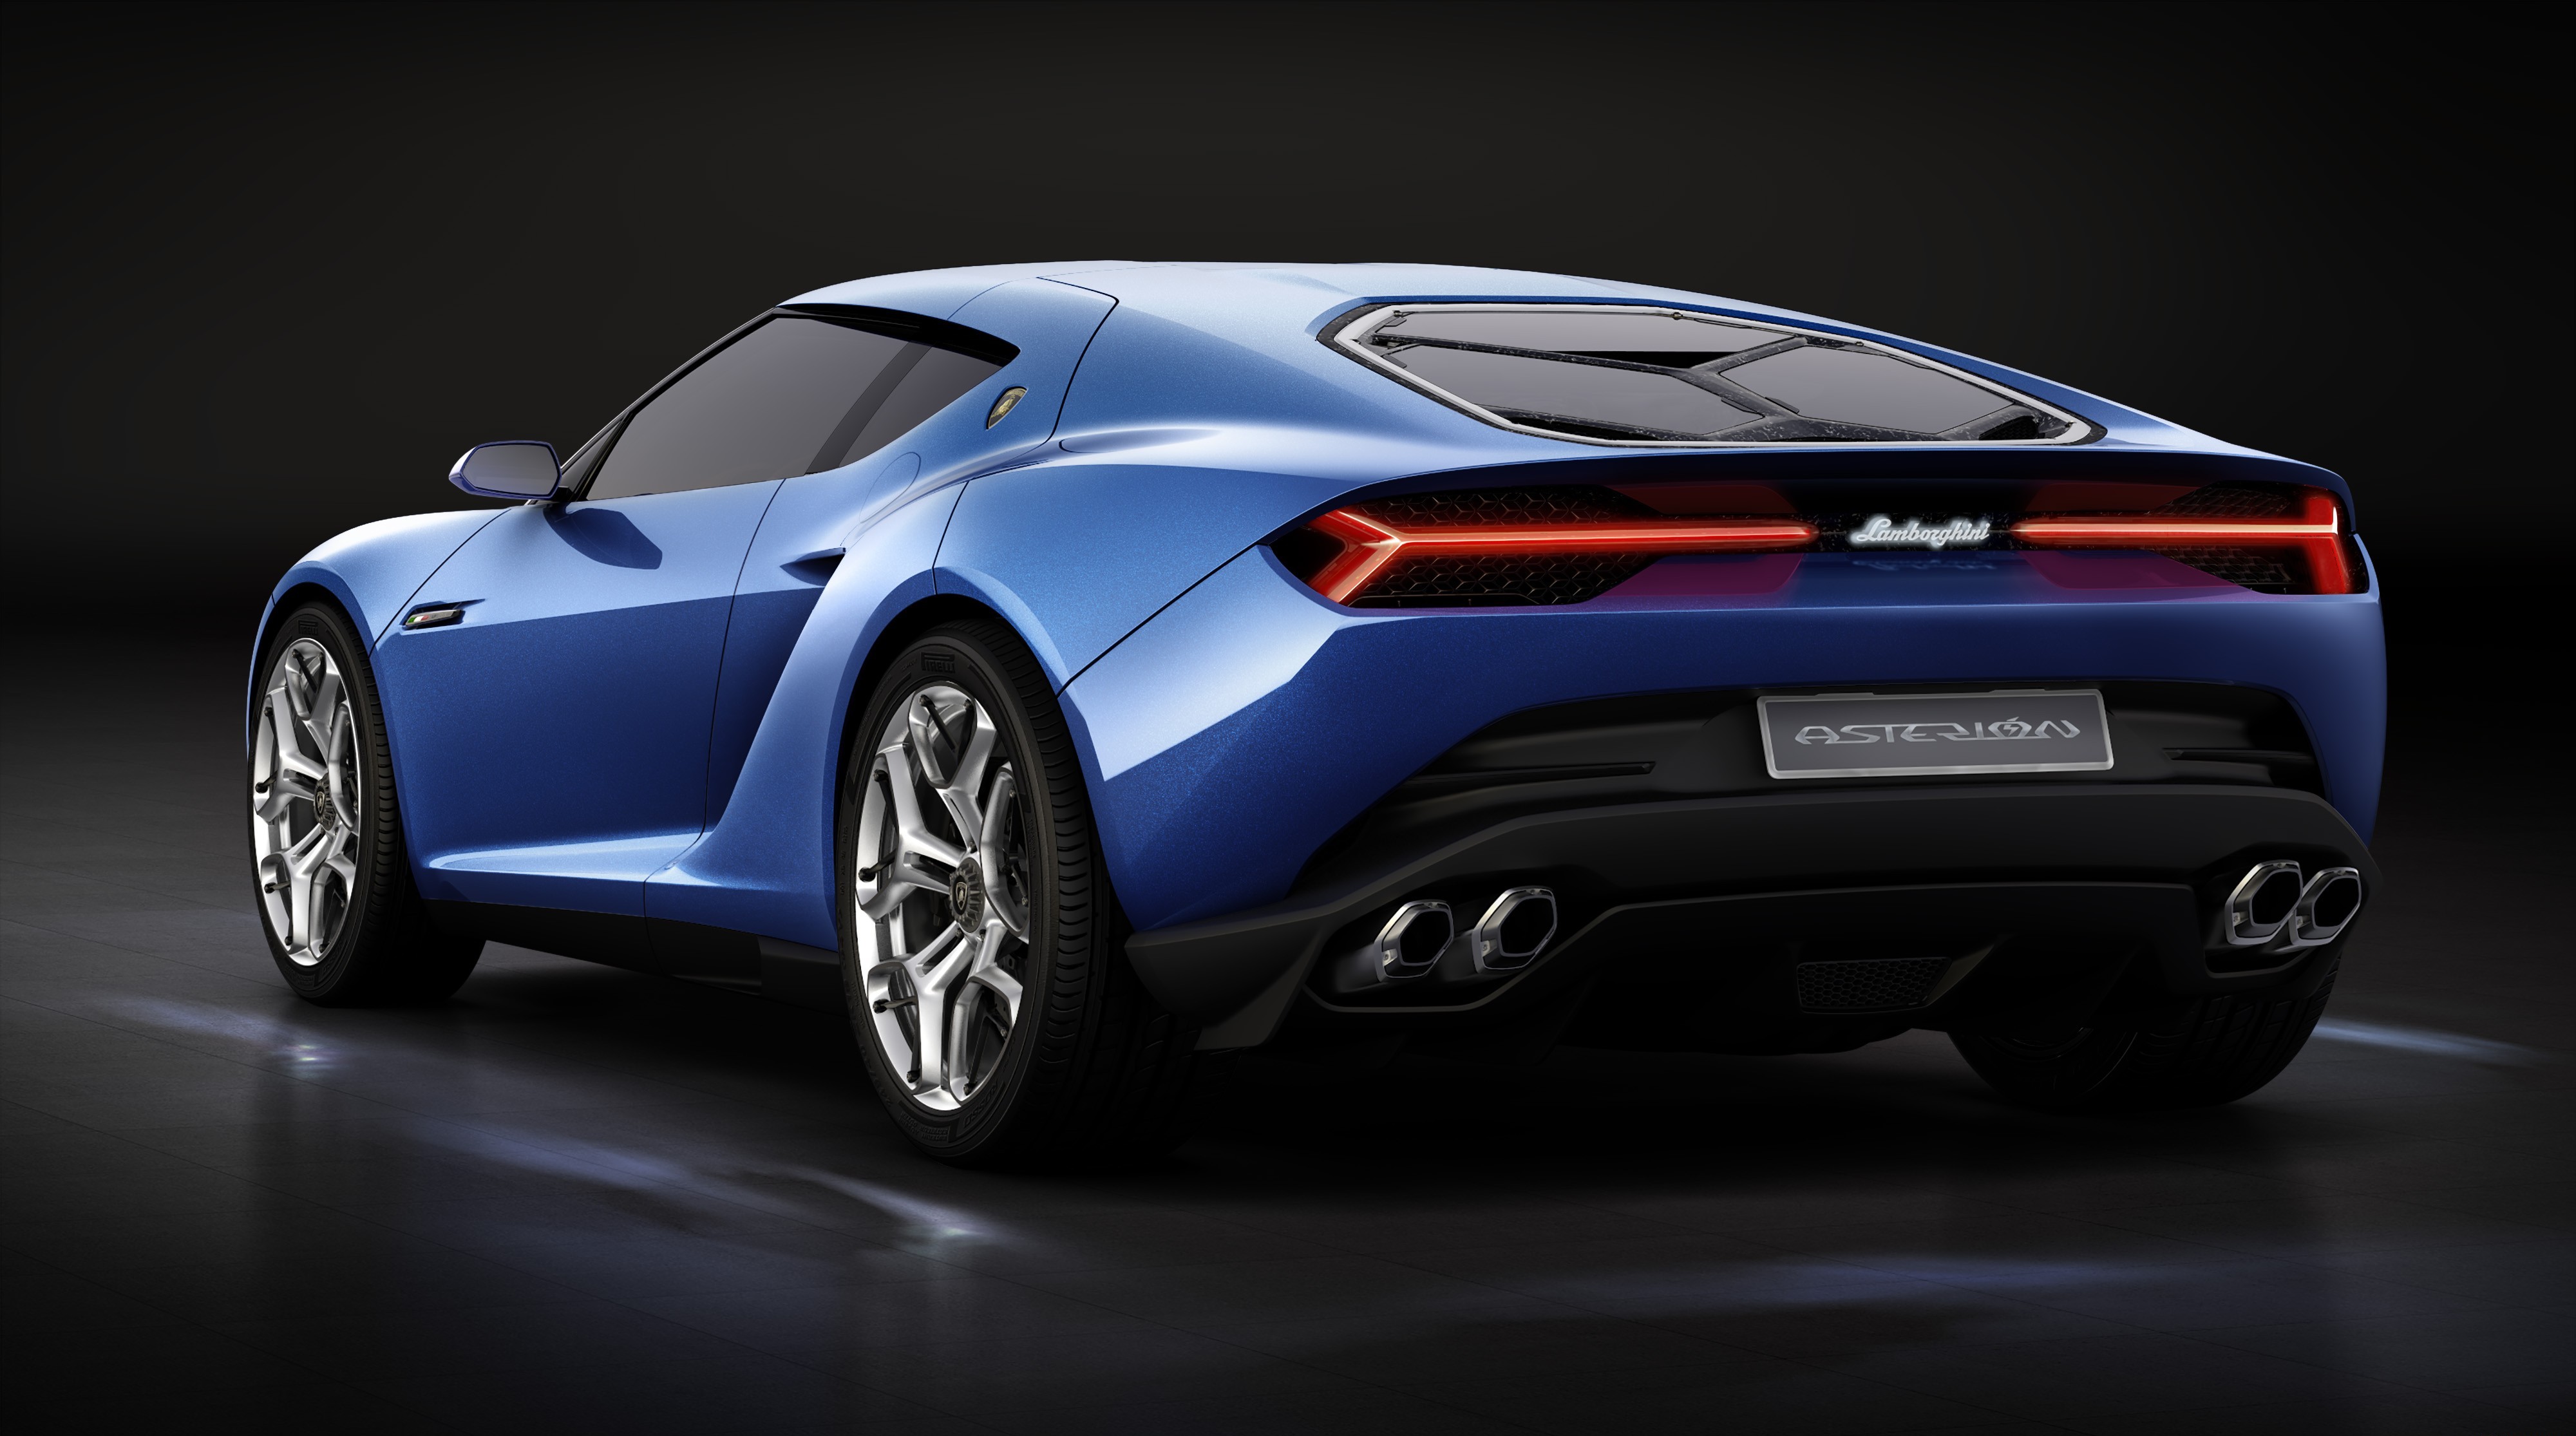 Lamborghini Asterion 4k: Hãy khám phá một sự kết hợp đầy tinh tế giữa sự hiện đại và sang trọng của đại diện hãng Lamborghini qua hình ảnh Lamborghini Asterion 4k. Bạn sẽ được trải nghiệm một chiều sâu và những góc nhìn hiếm có về chiếc siêu xe này.